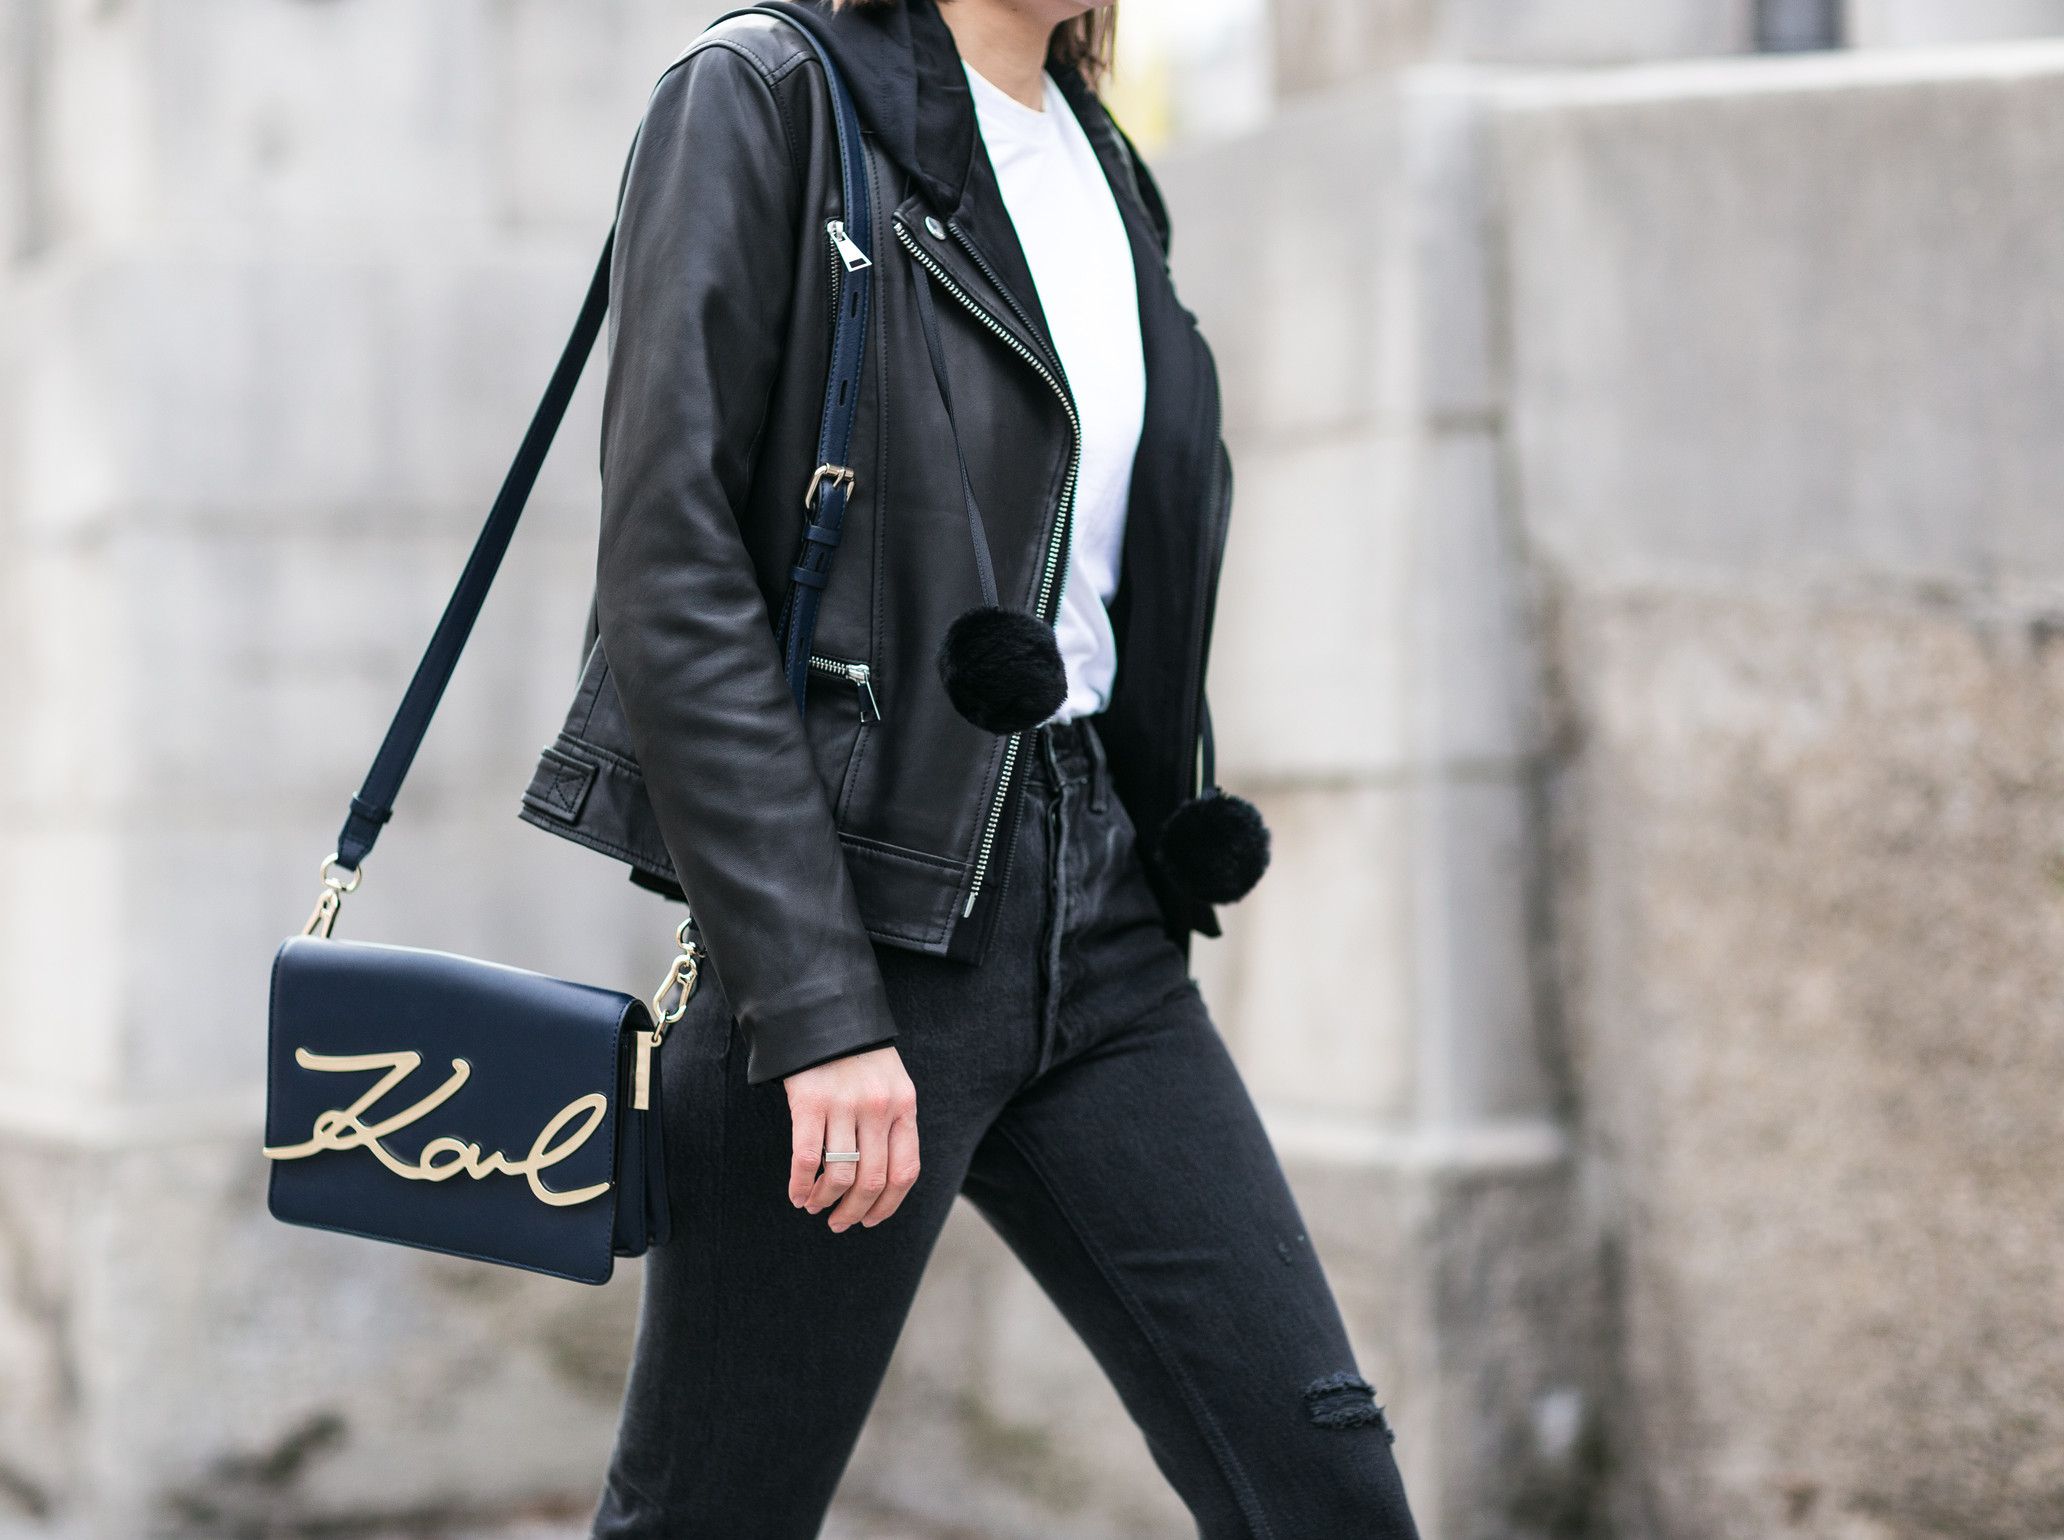 Женские сумки Karl Lagerfeld: идеальное сочетание стиля, качества и элегантности